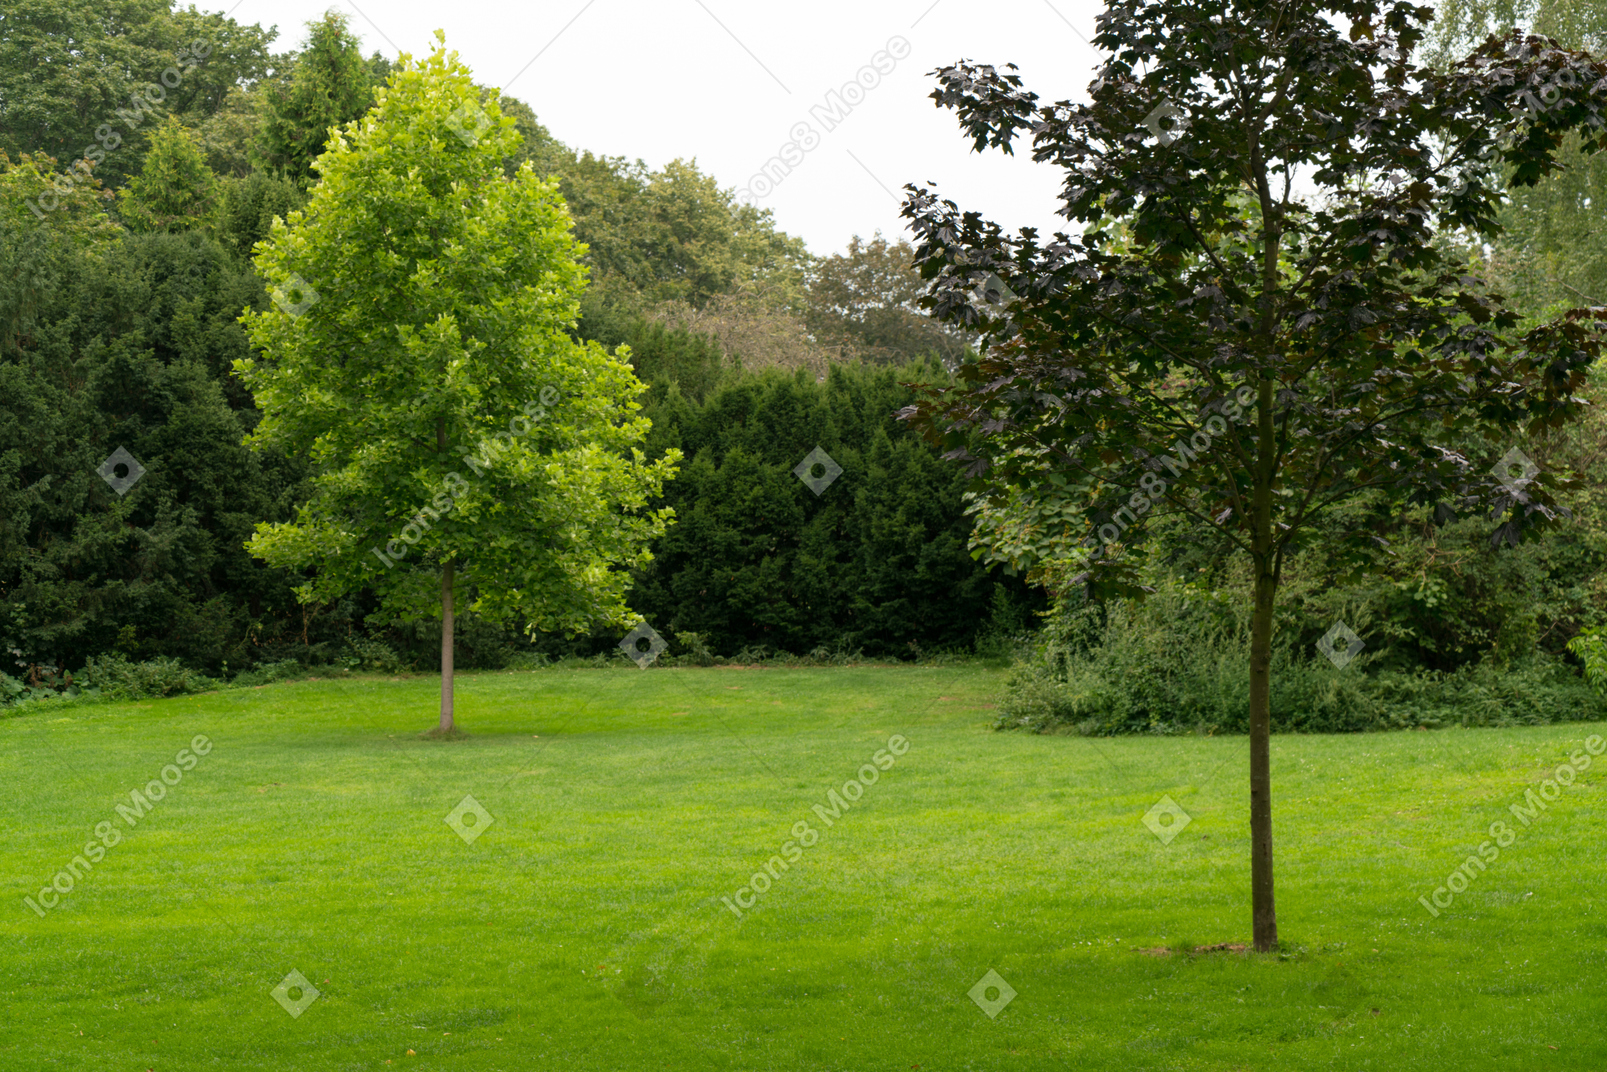 Hermosa vista de un césped verde con árboles.